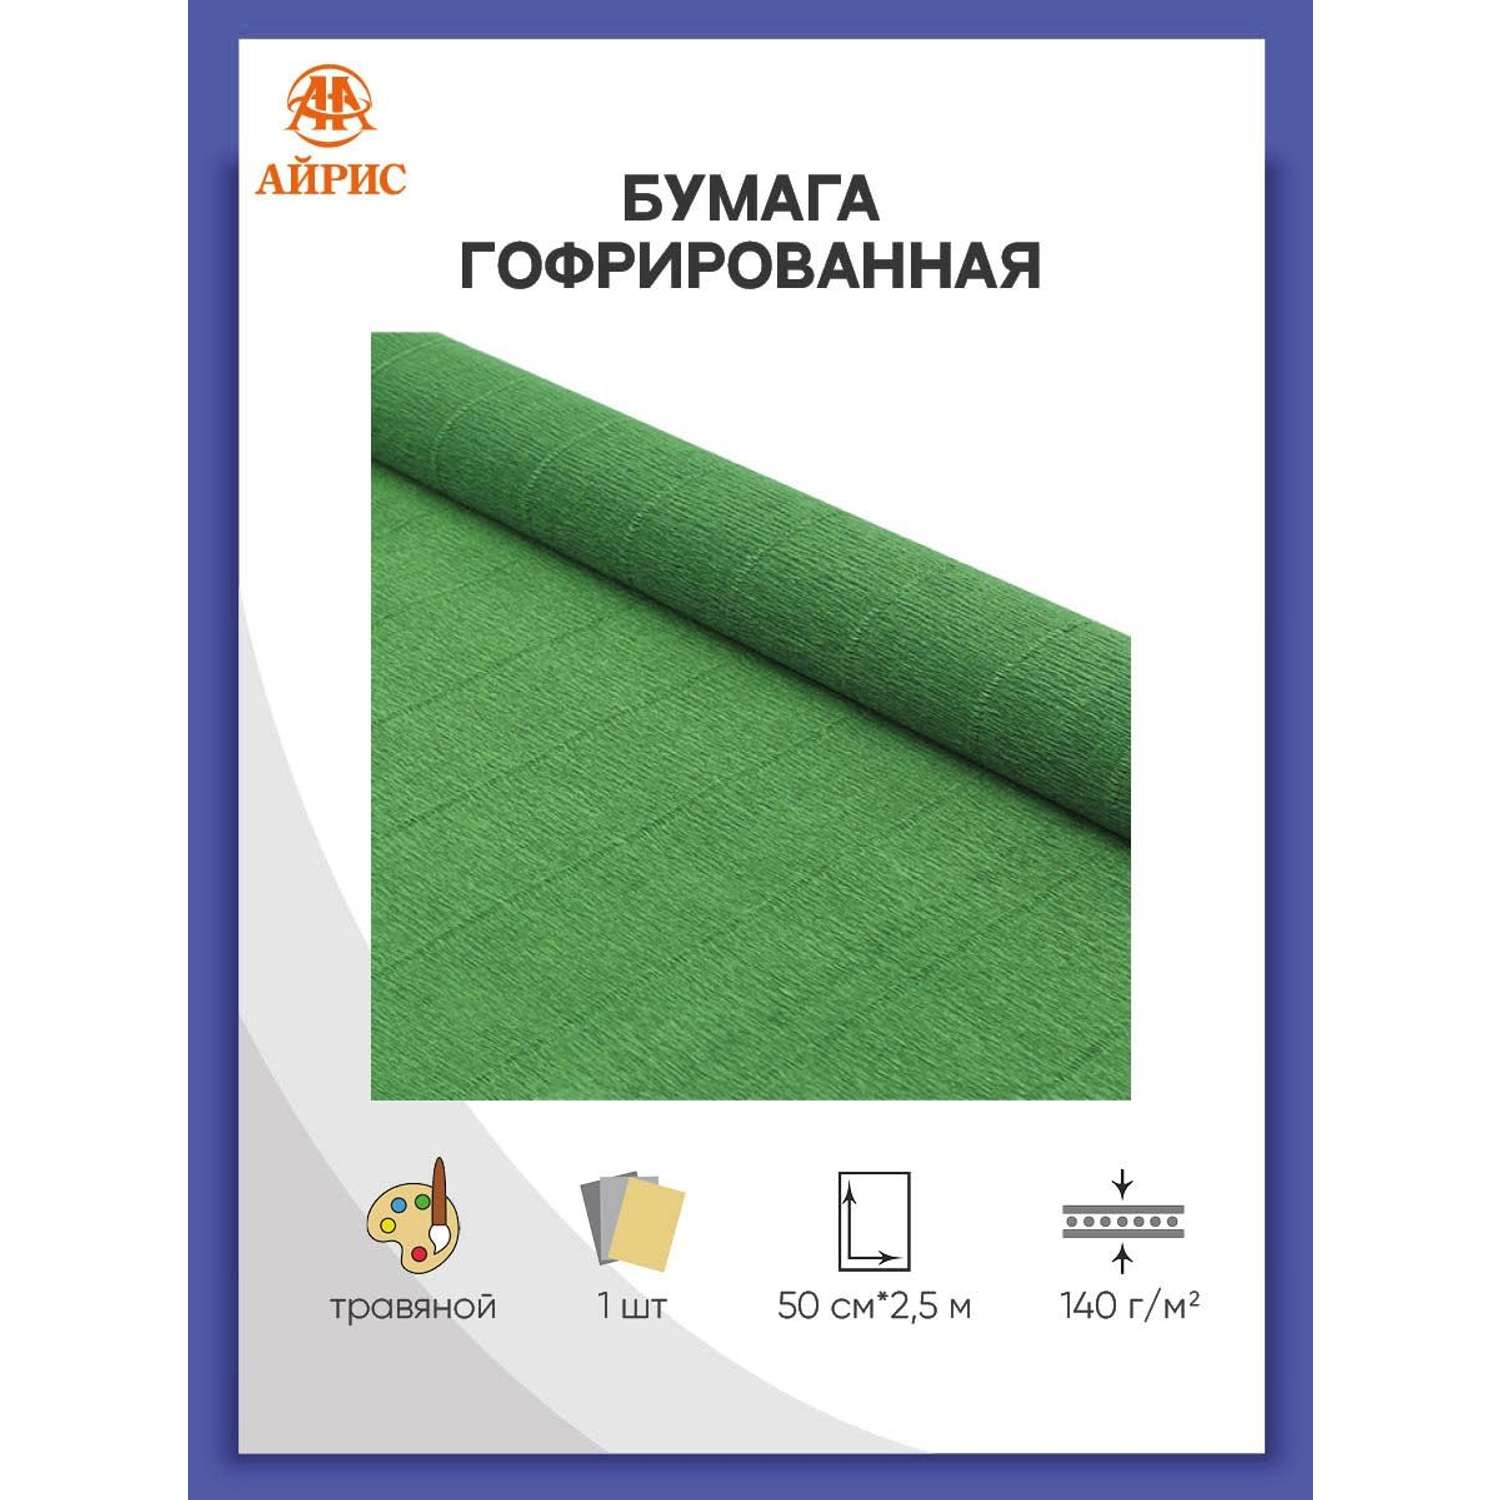 Бумага Айрис гофрированная креповая для творчества 50 см х 2.5 м 140 г травяная - фото 1